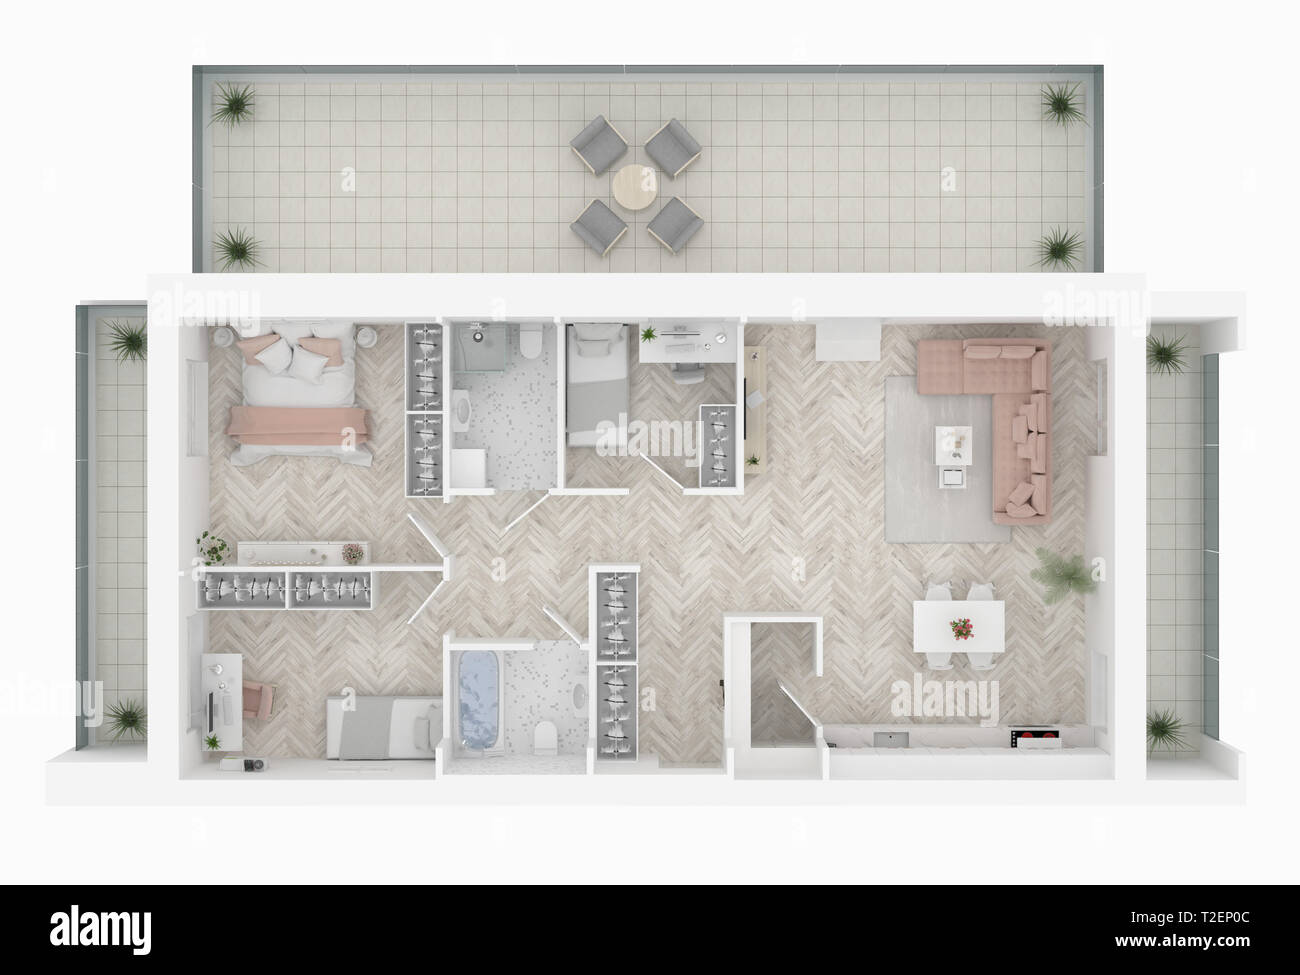 Plan d'étage d'une maison Vue de dessus 3D illustration. Ouvrir concept living appartements Banque D'Images